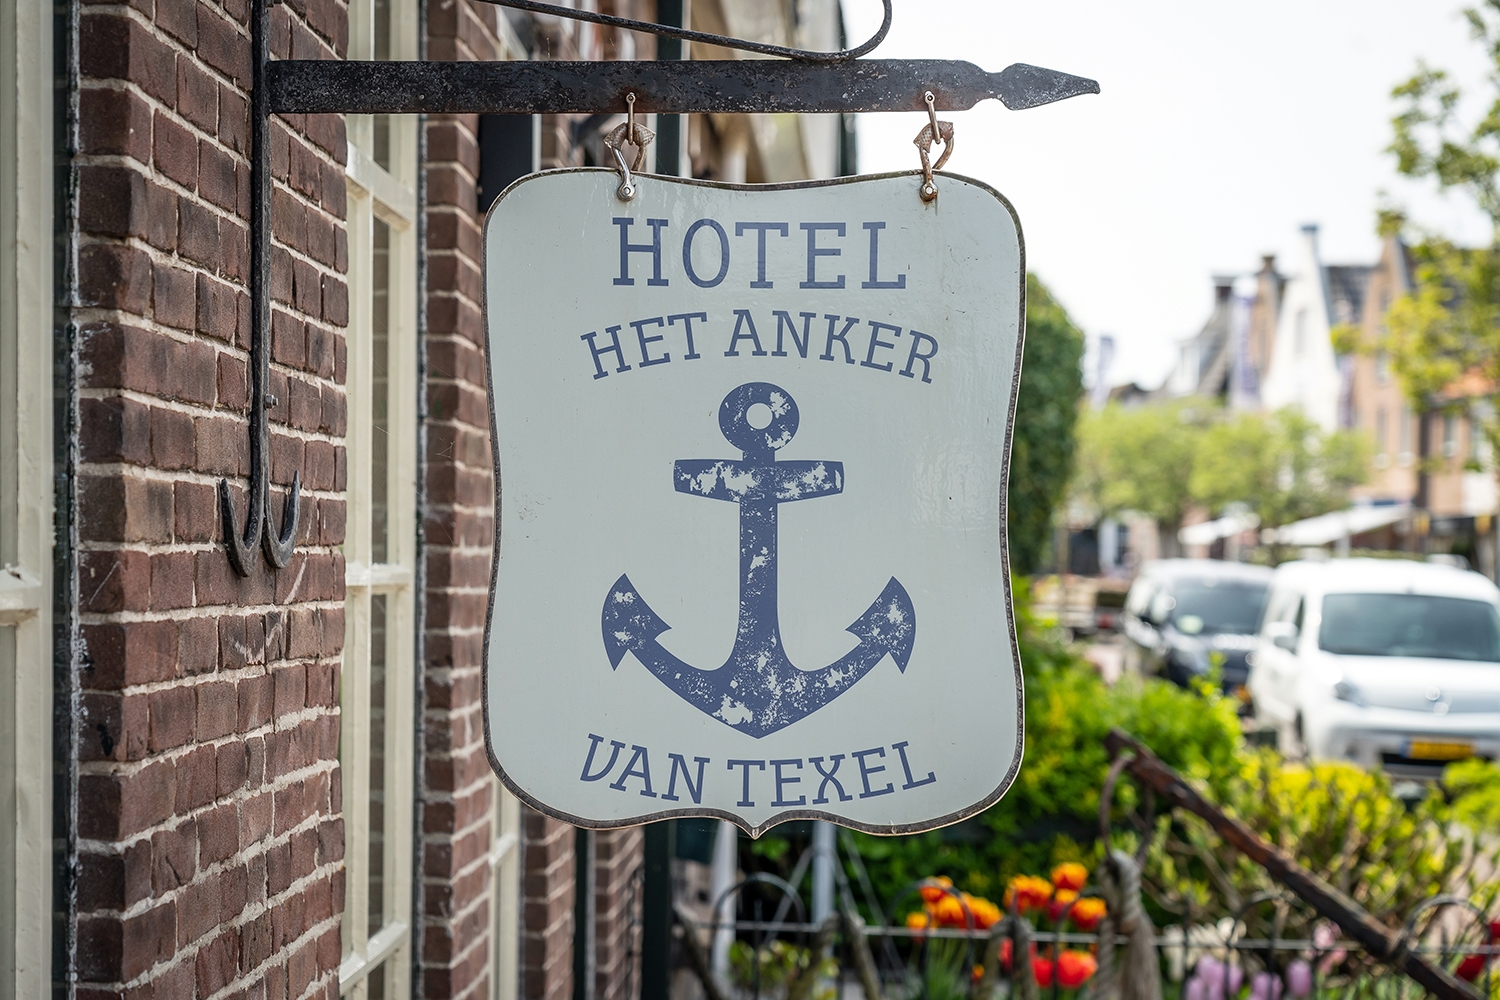 (c) Hotelhetankervantexel.nl